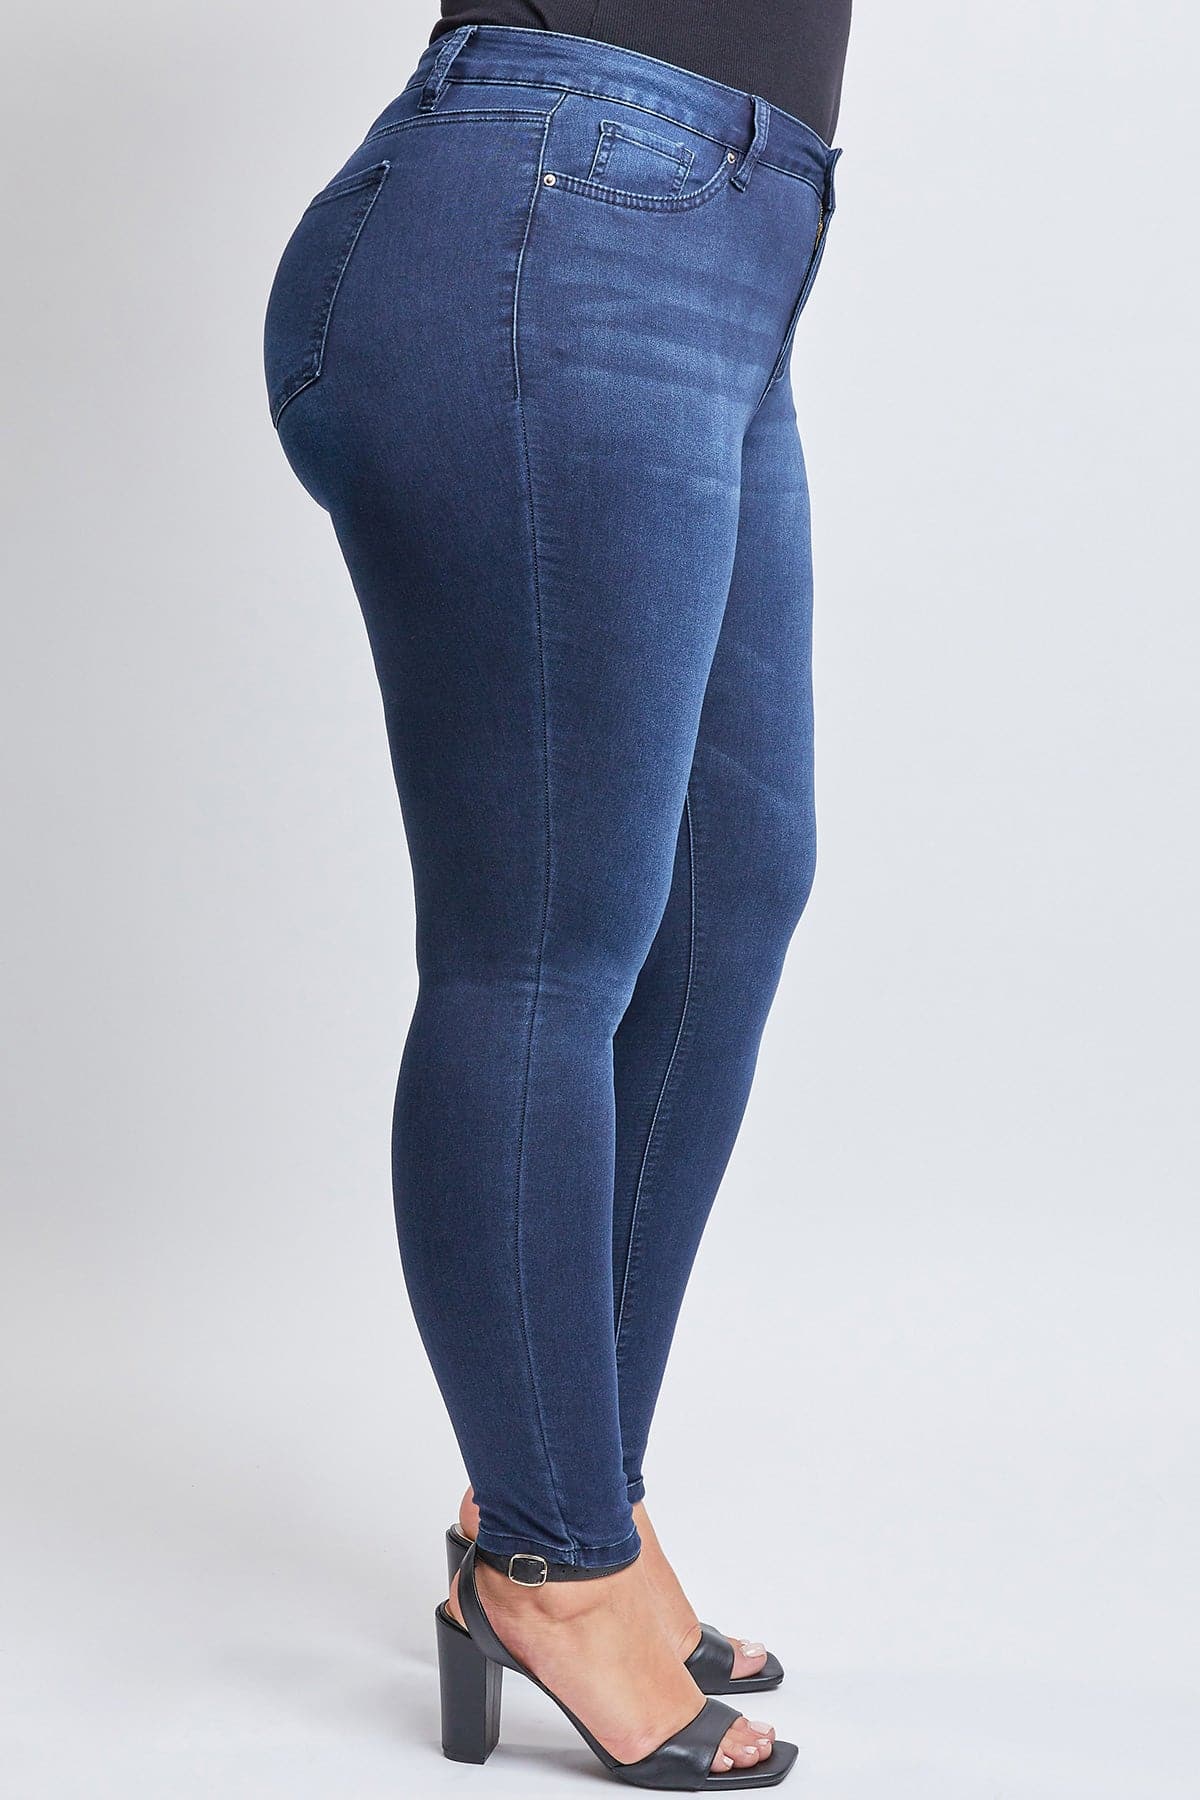 Women's Plus Size HyperDenim Super Stretchy Skinny Jeans